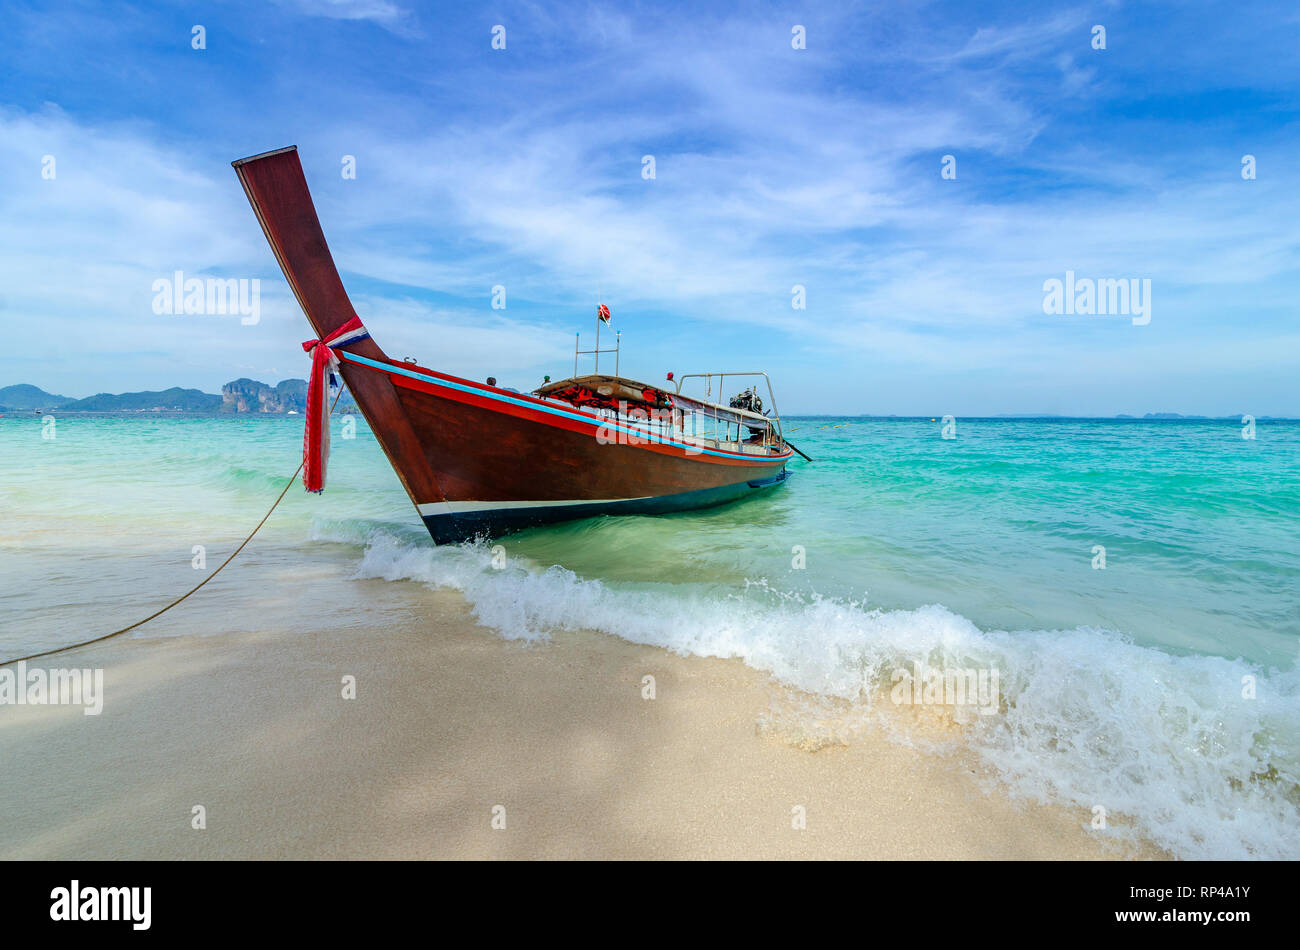 La barca di legno parcheggiato sul mare, spiaggia bianca su un cielo blu chiaro, mare blu Foto Stock